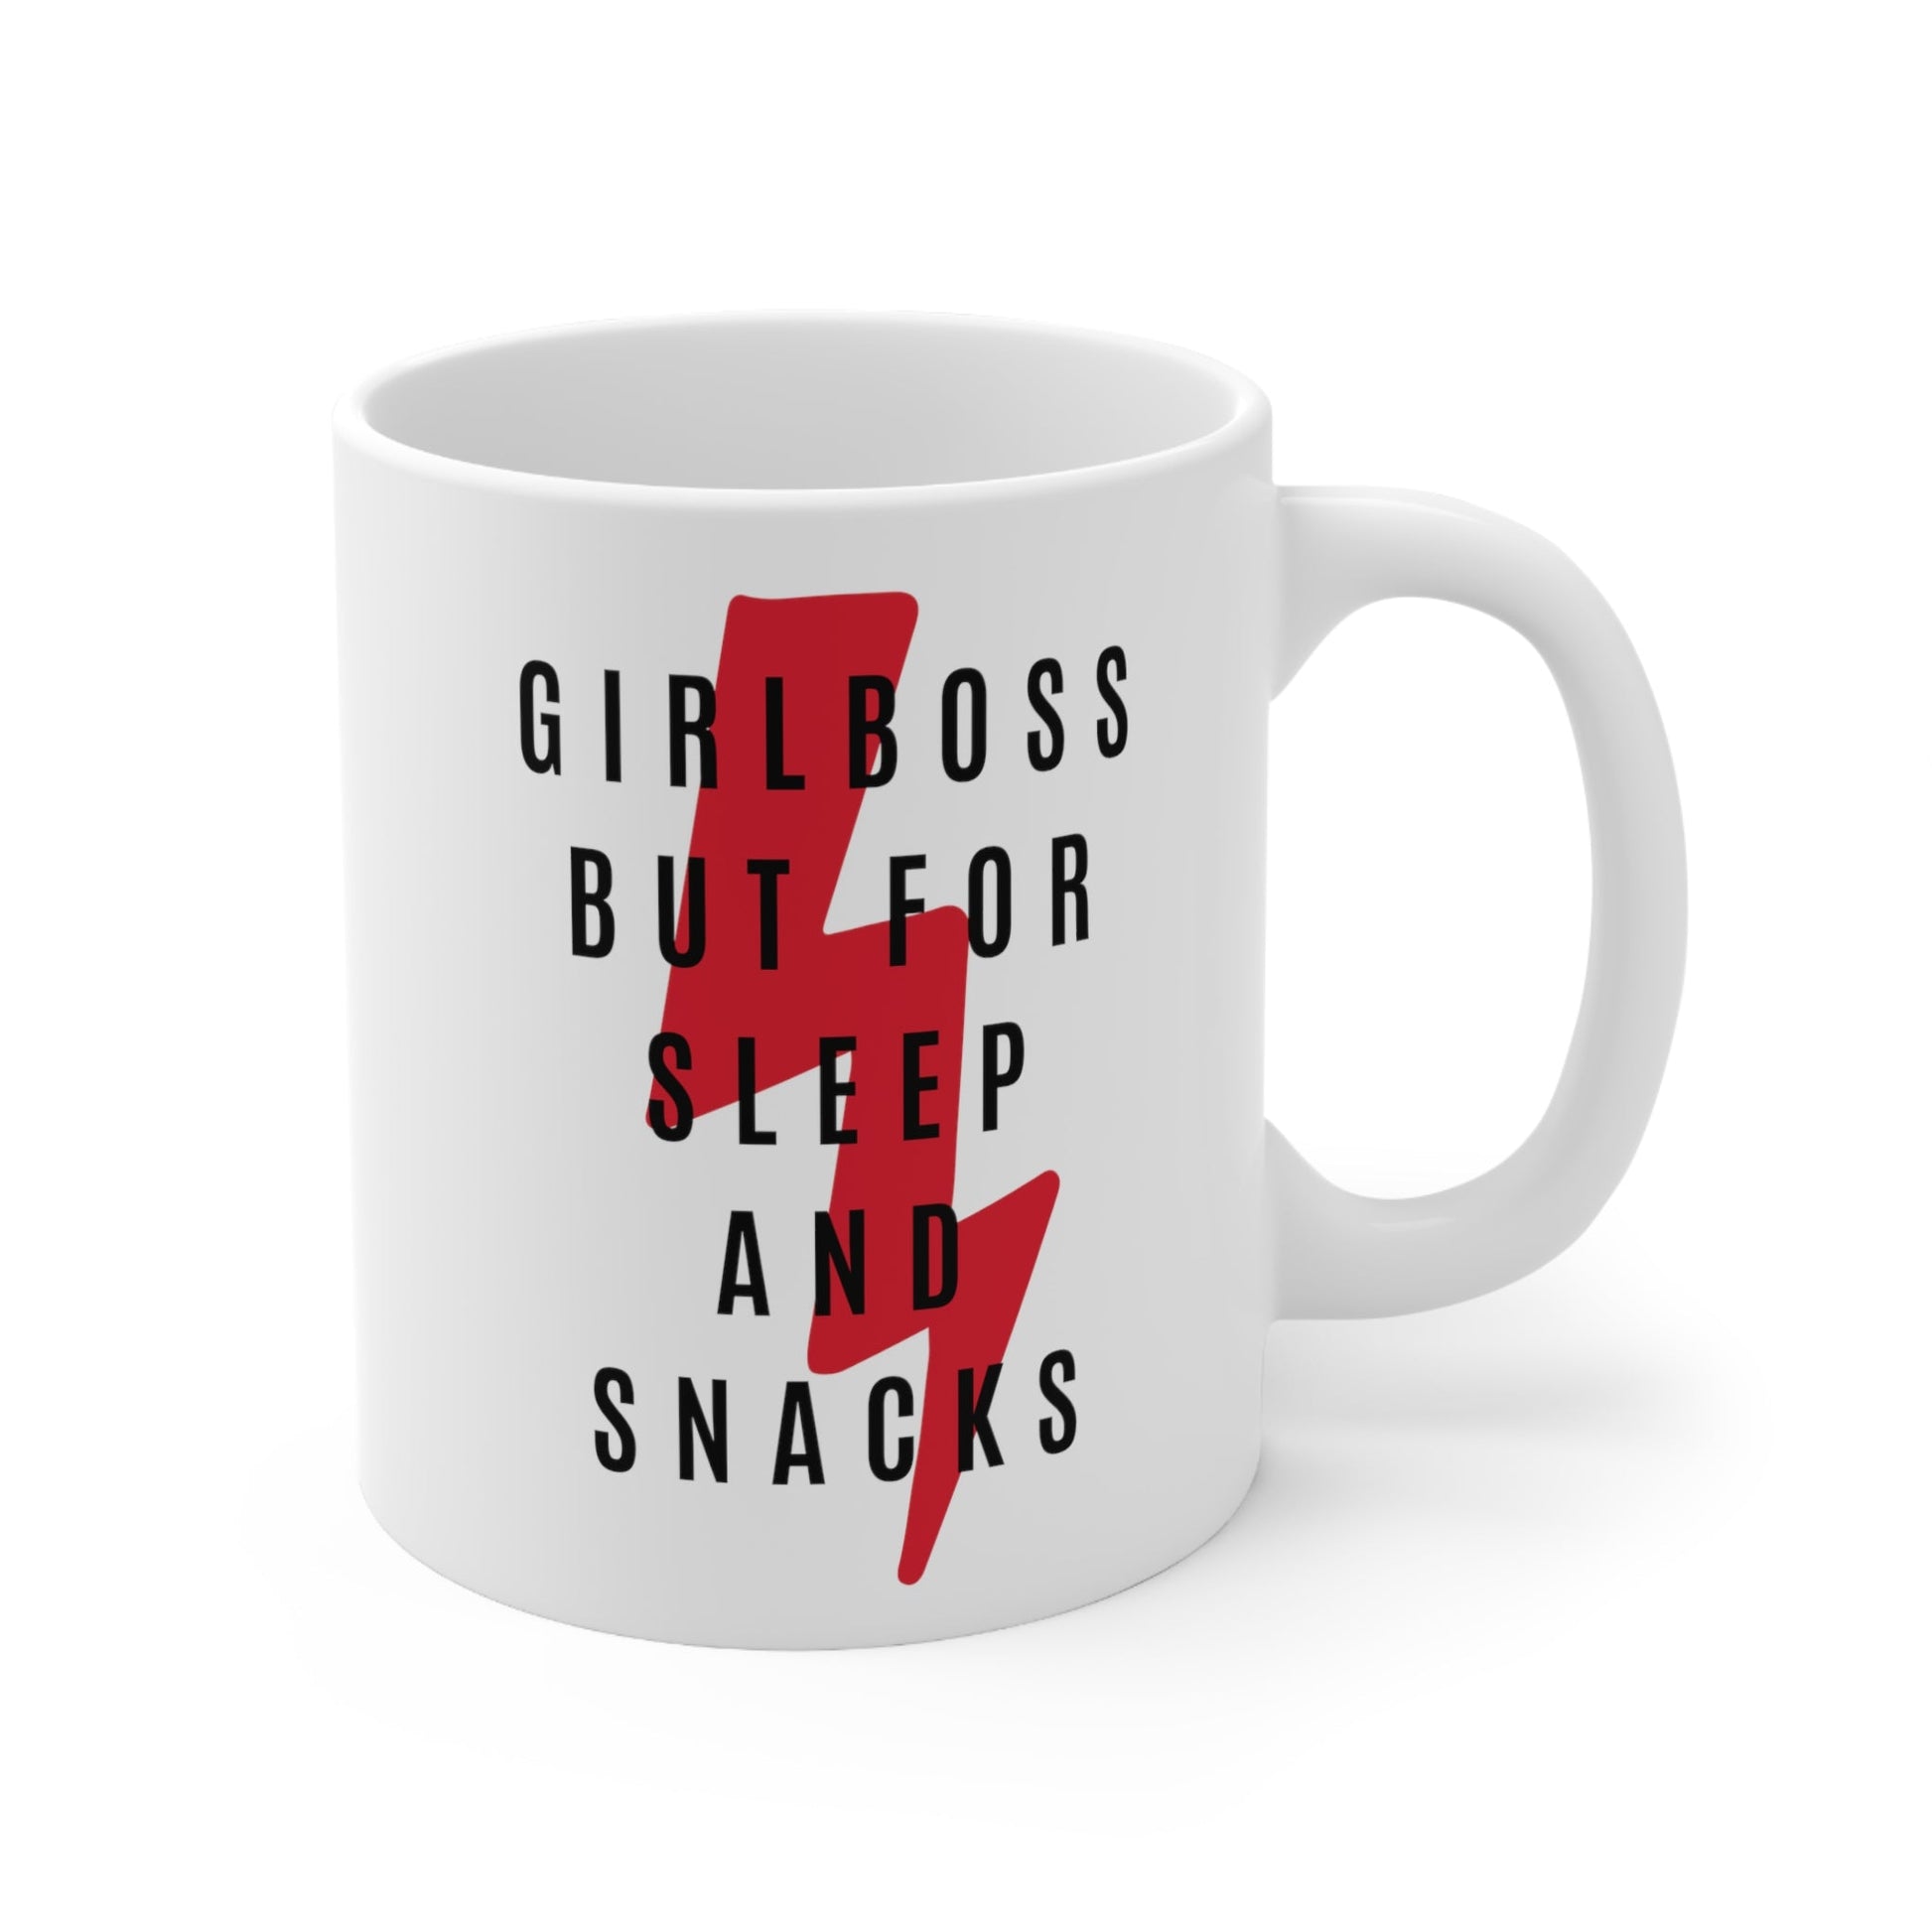 Girlboss But for Sleep and Snacks Ceramic Mug 11oz